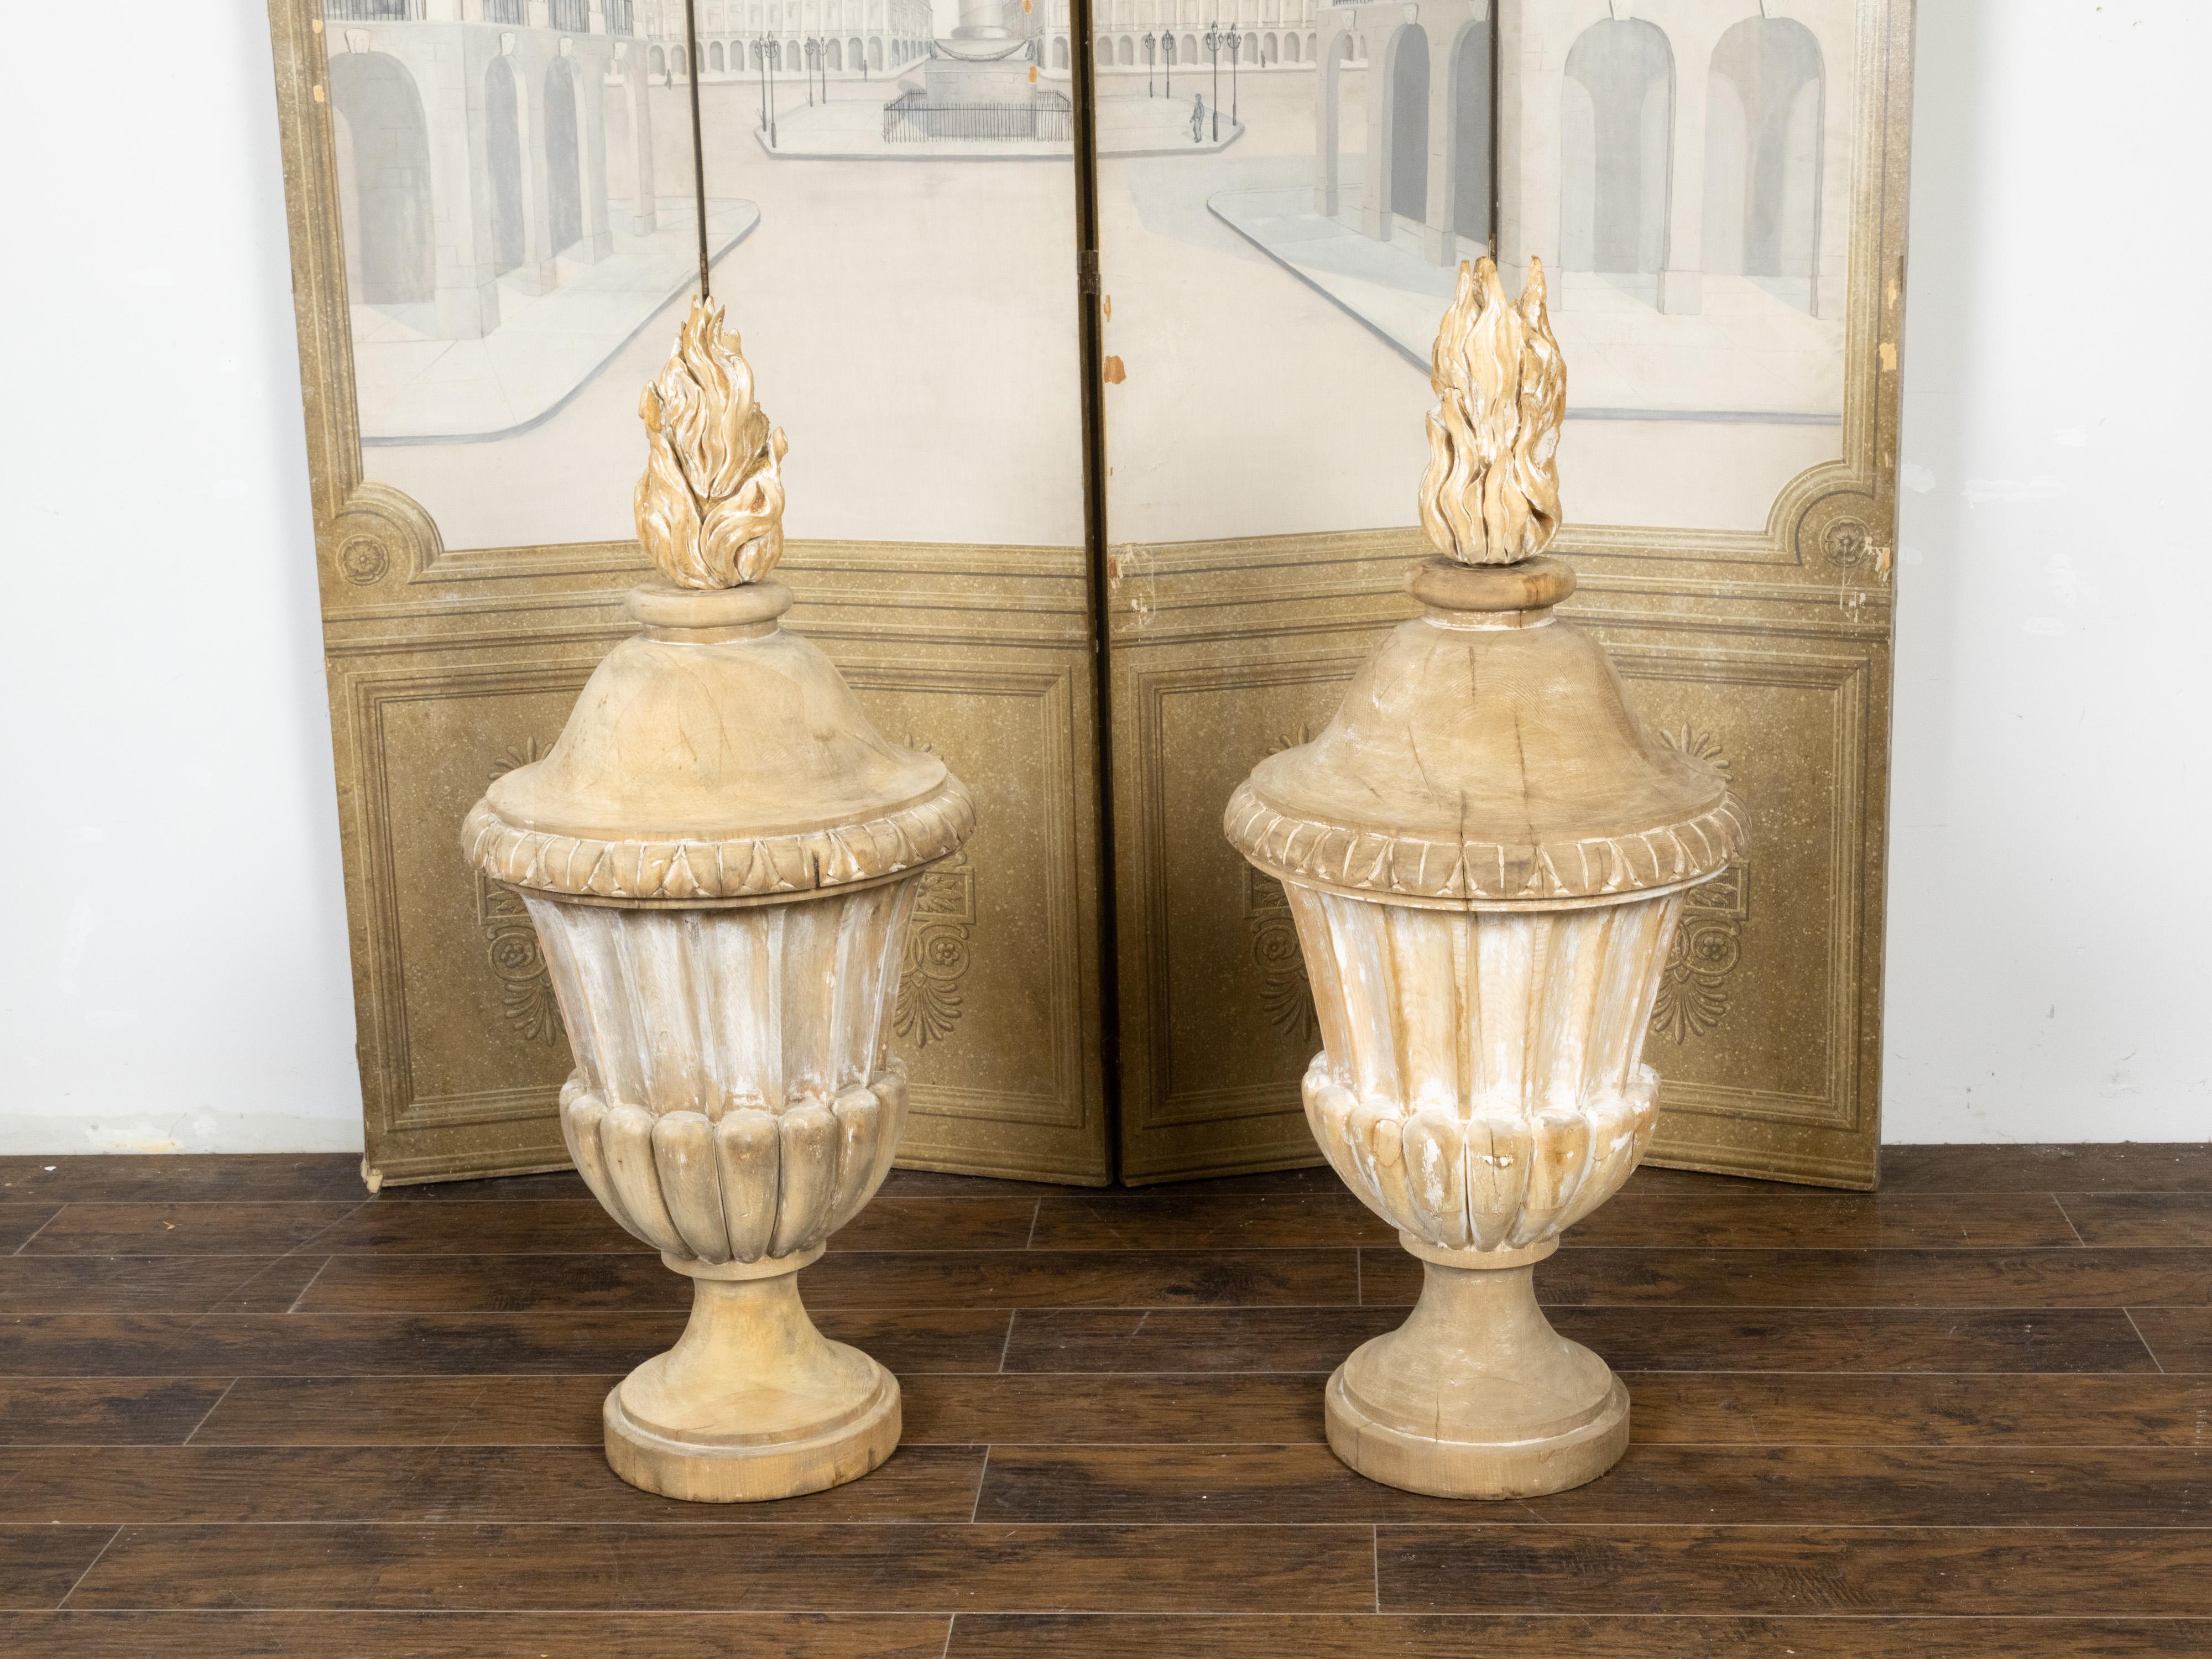 Une paire surdimensionnée de Pots à Feu en bois sculpté français du 19ème siècle, avec des flammes supérieures et des vases cannelés. Créée en France au XIXe siècle, cette paire de Pots à Feu nous ramène à la tradition classique. Pensez à Versailles